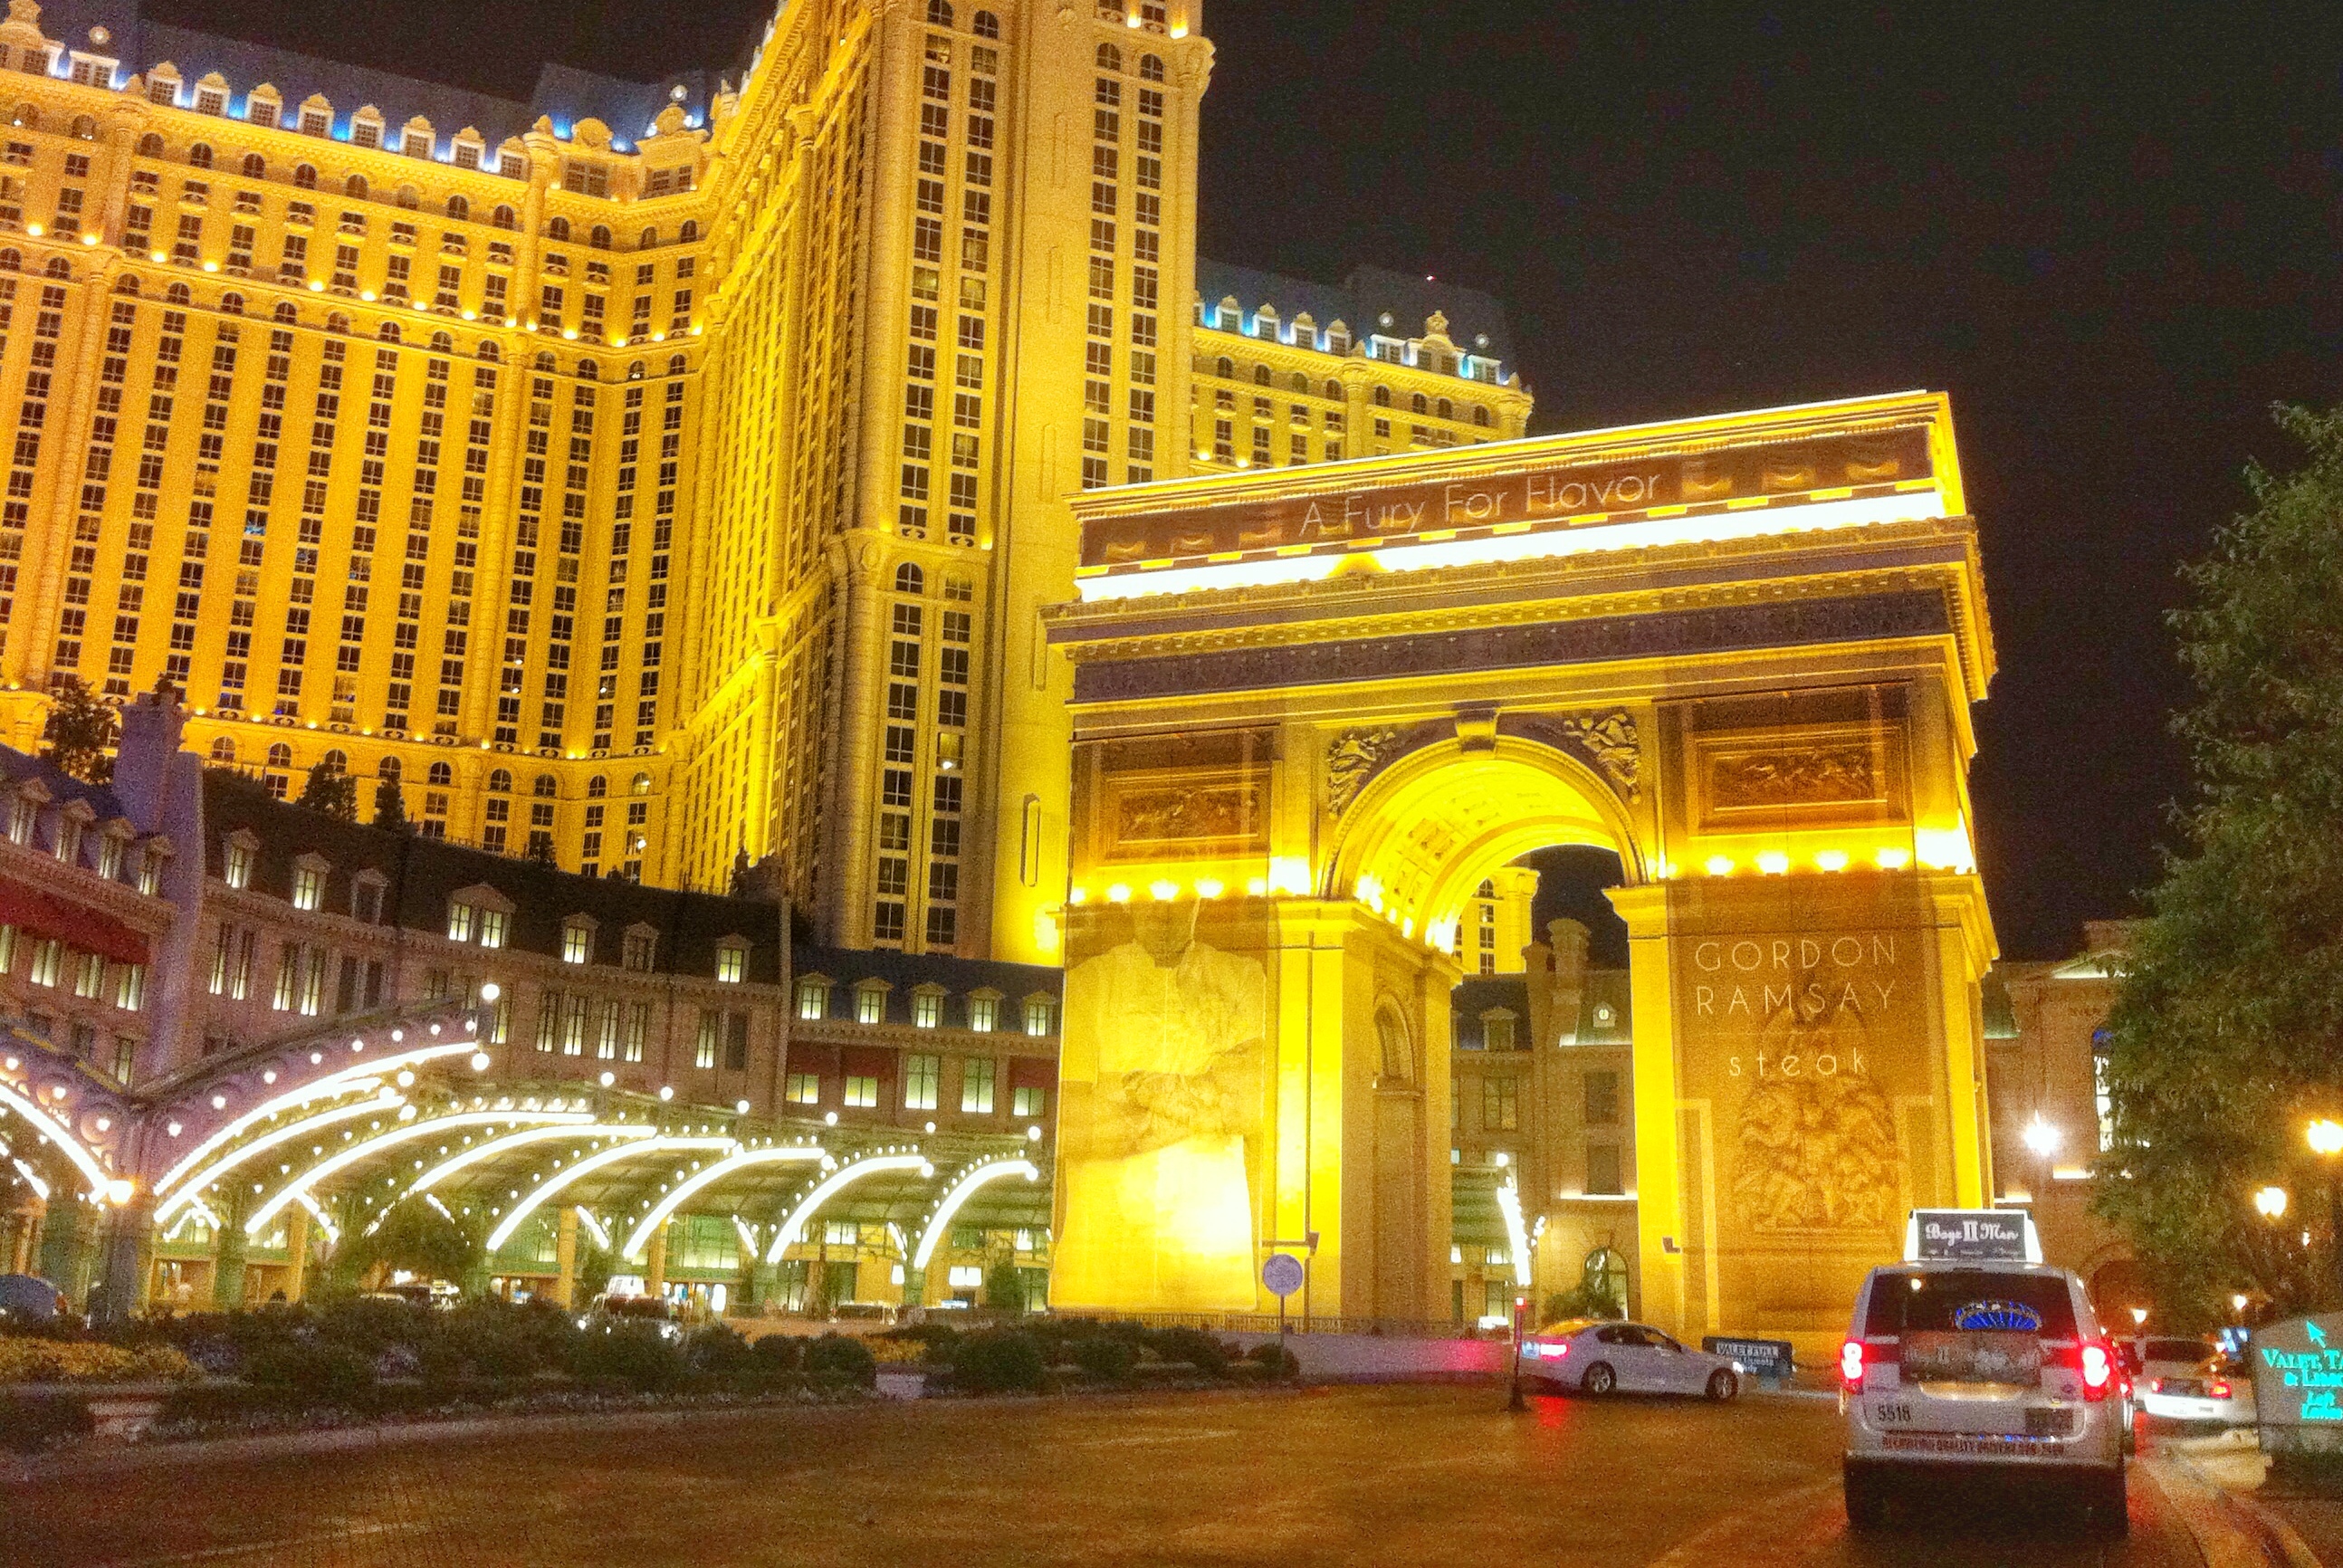 Interior view of replica street of Paris in Paris Hotel Las Vegas